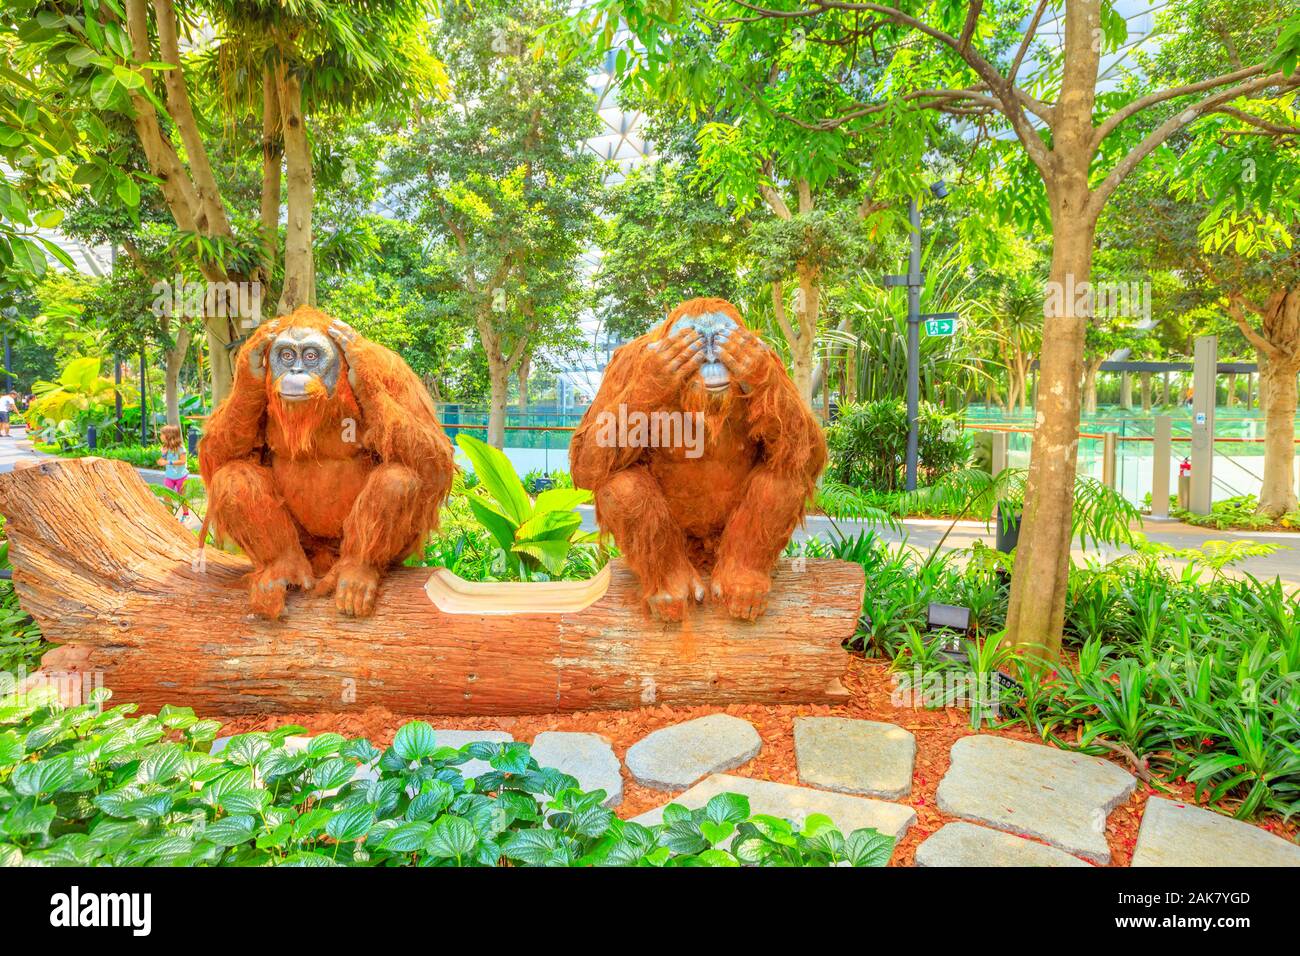 Singapur - el Aug 8, 2019: Dos orangutanes escultura Topiary, paseo en canopy Park. Joya Changi Airport es un parque temático con jardines, atracciones, un Foto de stock